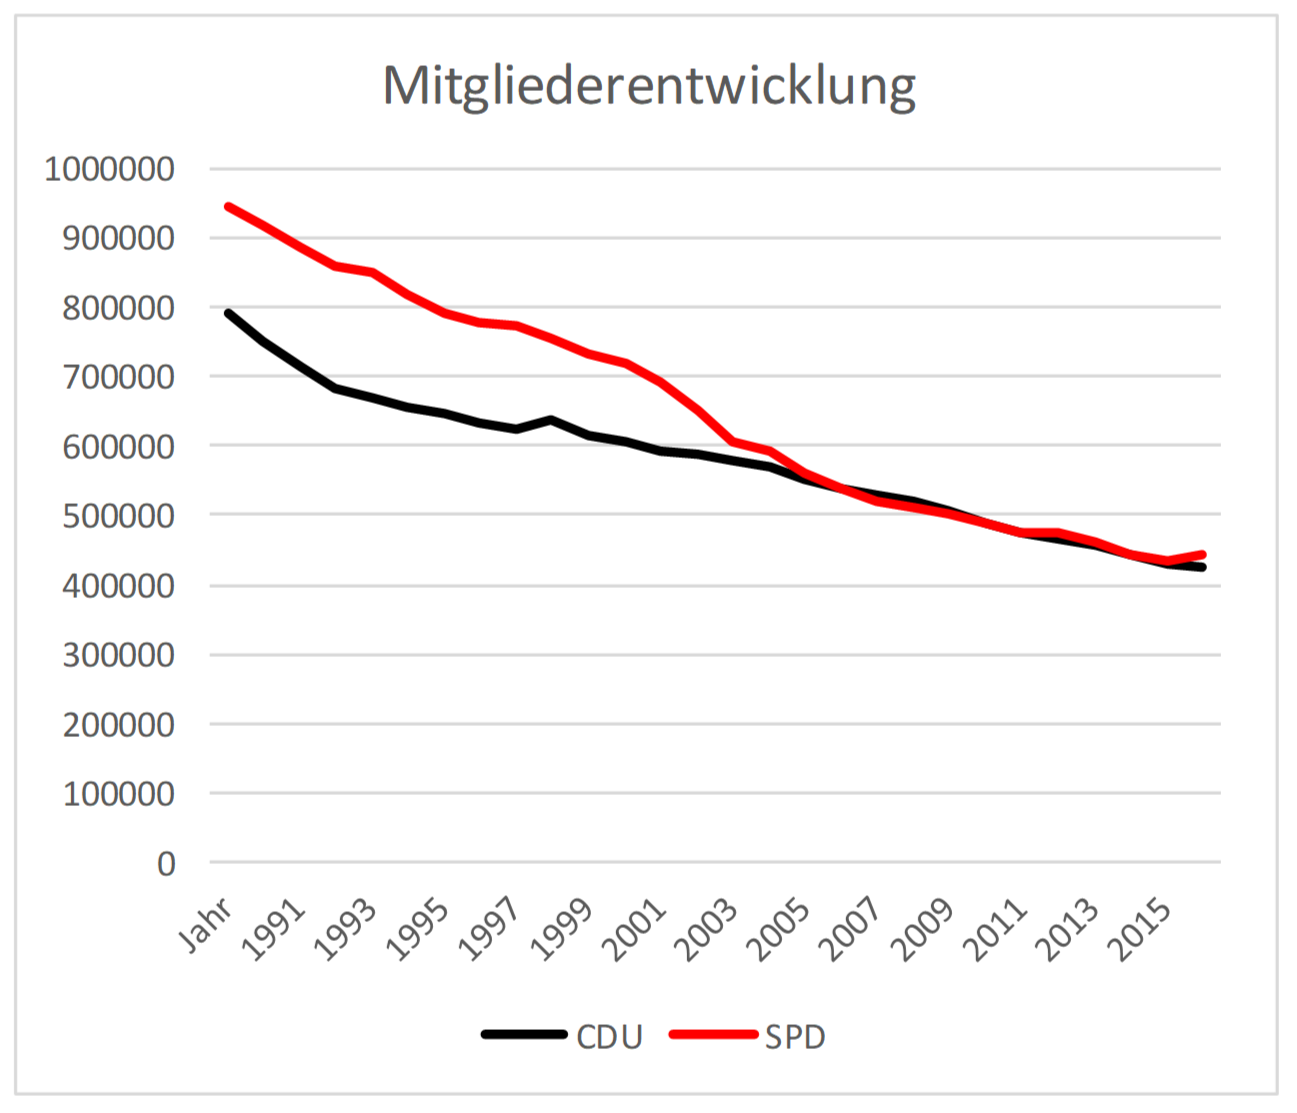 Grafik Mitgliederentwicklung CDU, SPD 1990 bis 2017